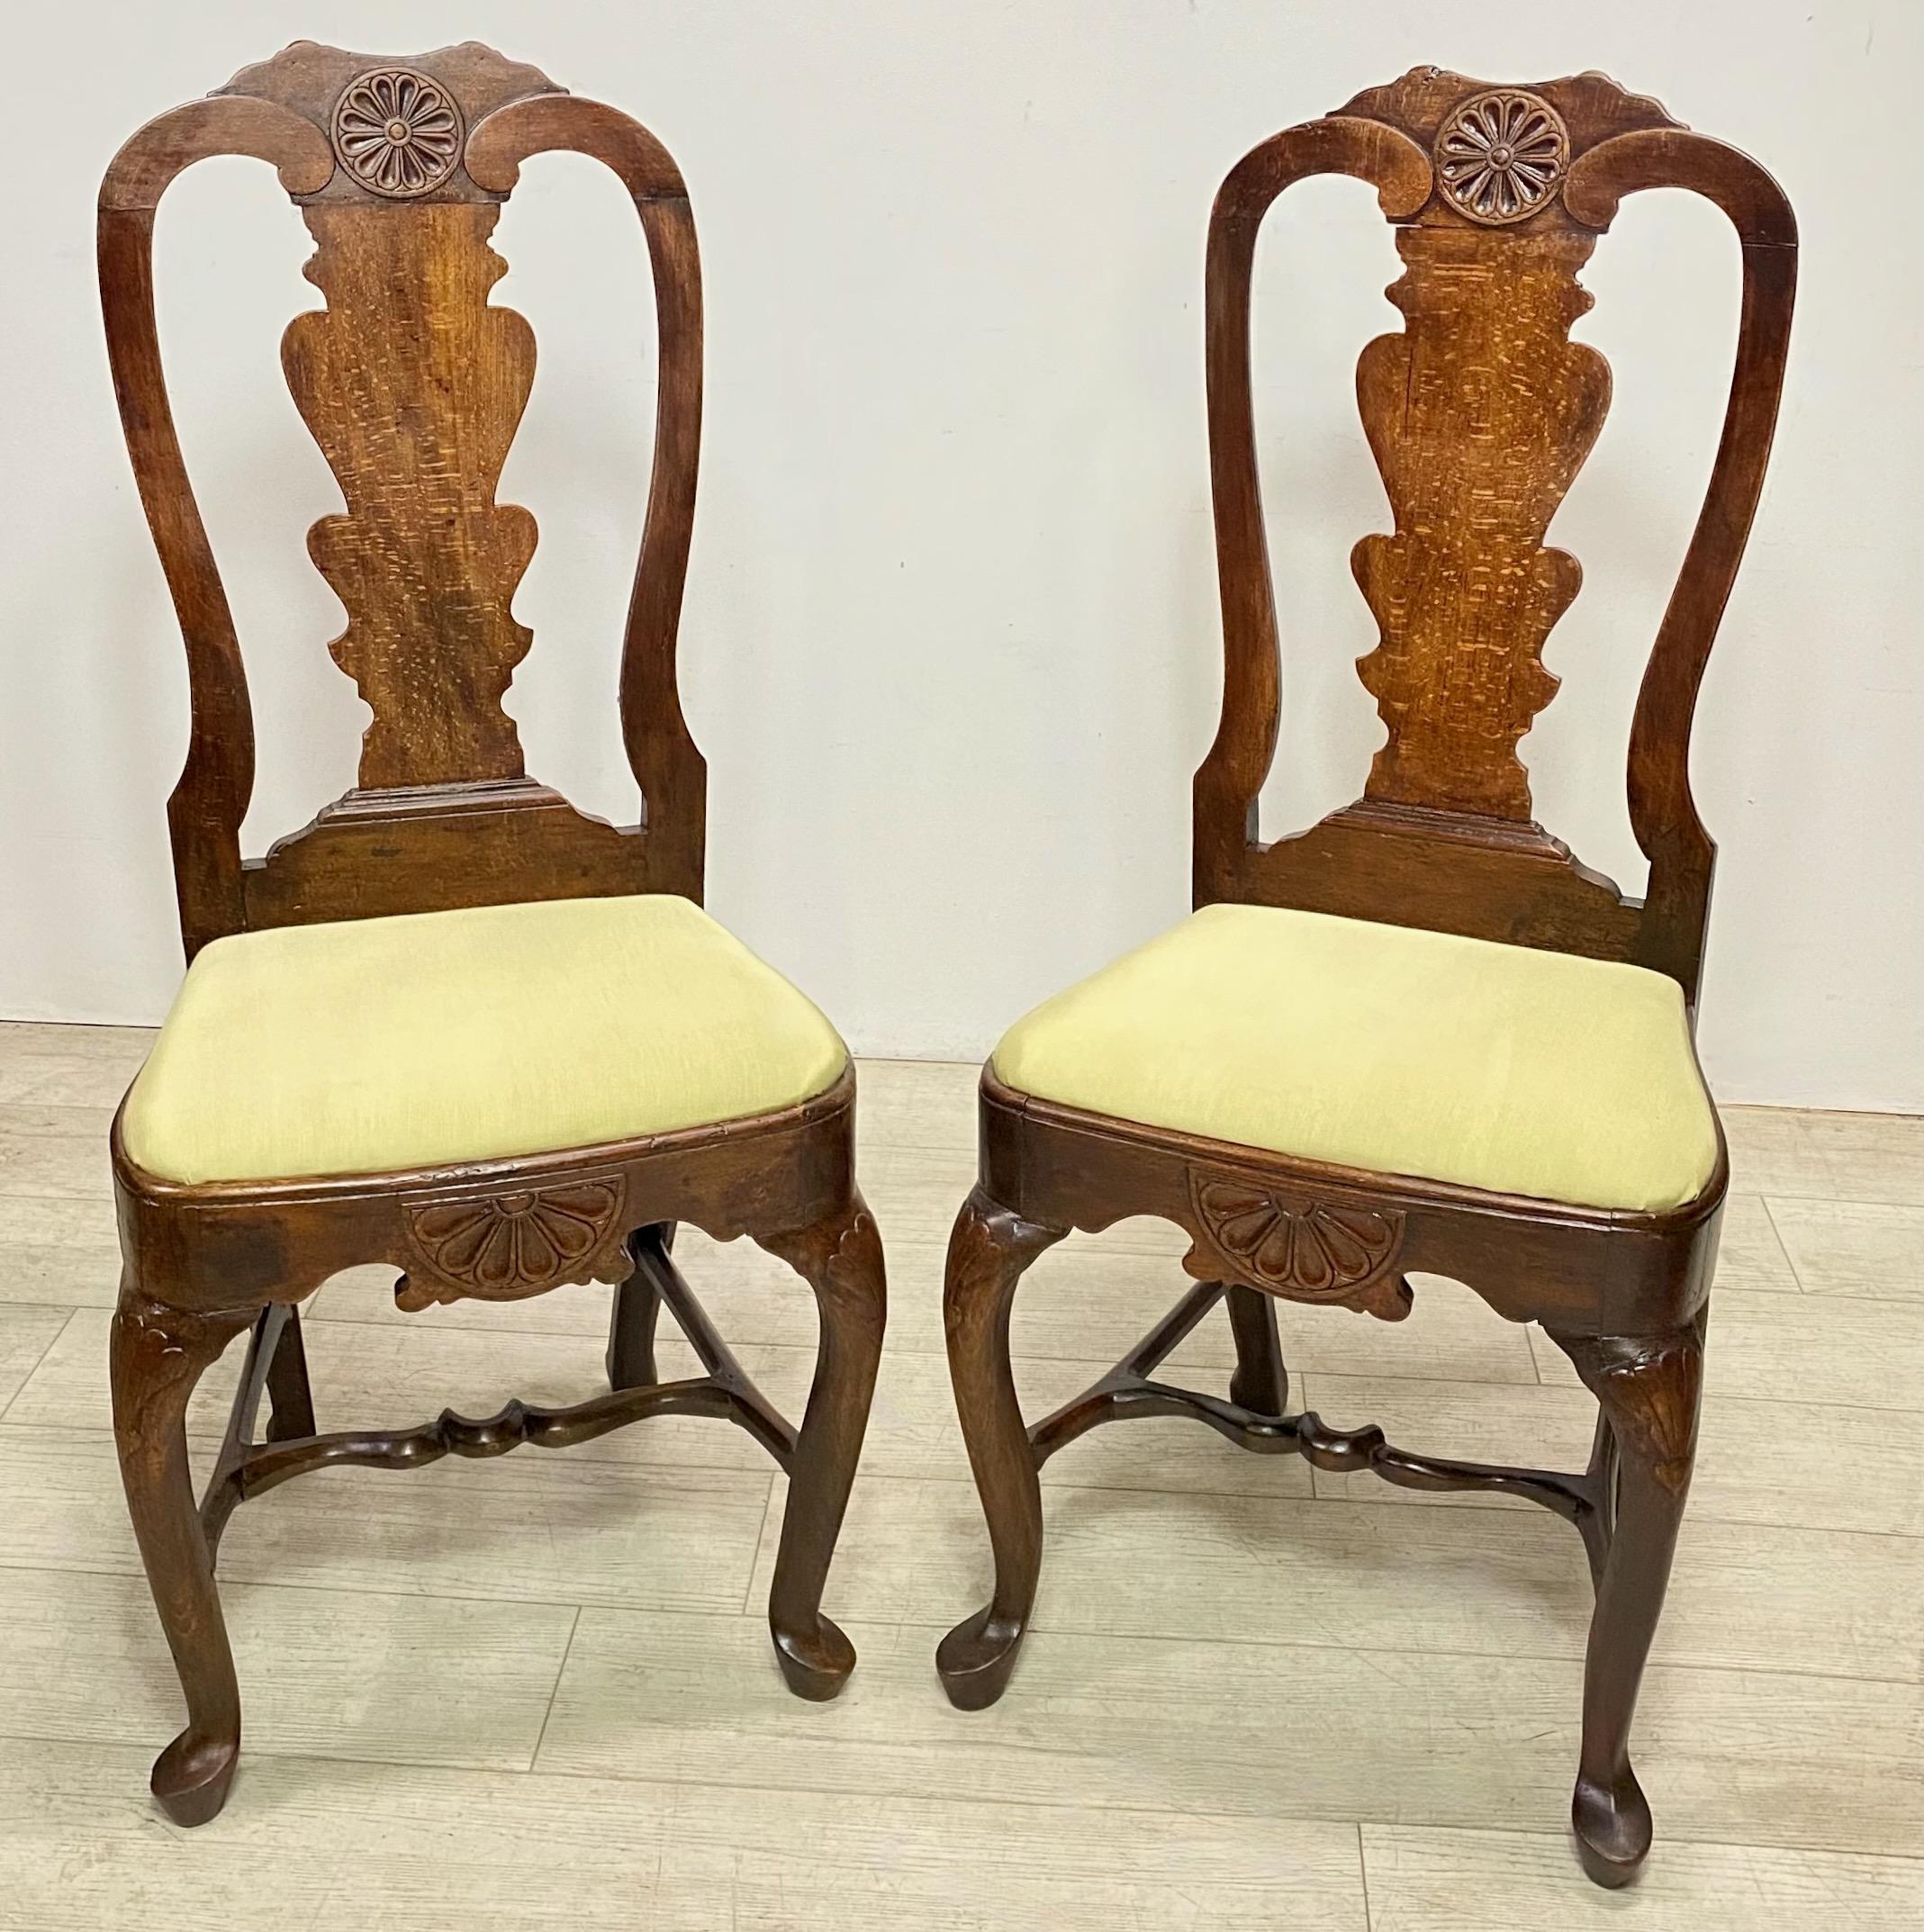 Ein Paar englische oder niederländische Beistellstühle aus Eiche aus der Mitte des 18. Jahrhunderts.
Kürzlich neu lackiert und gepolstert.
Die Stühle weisen jedoch professionelle alte Reparaturen auf, sind aber sehr robust und solide.